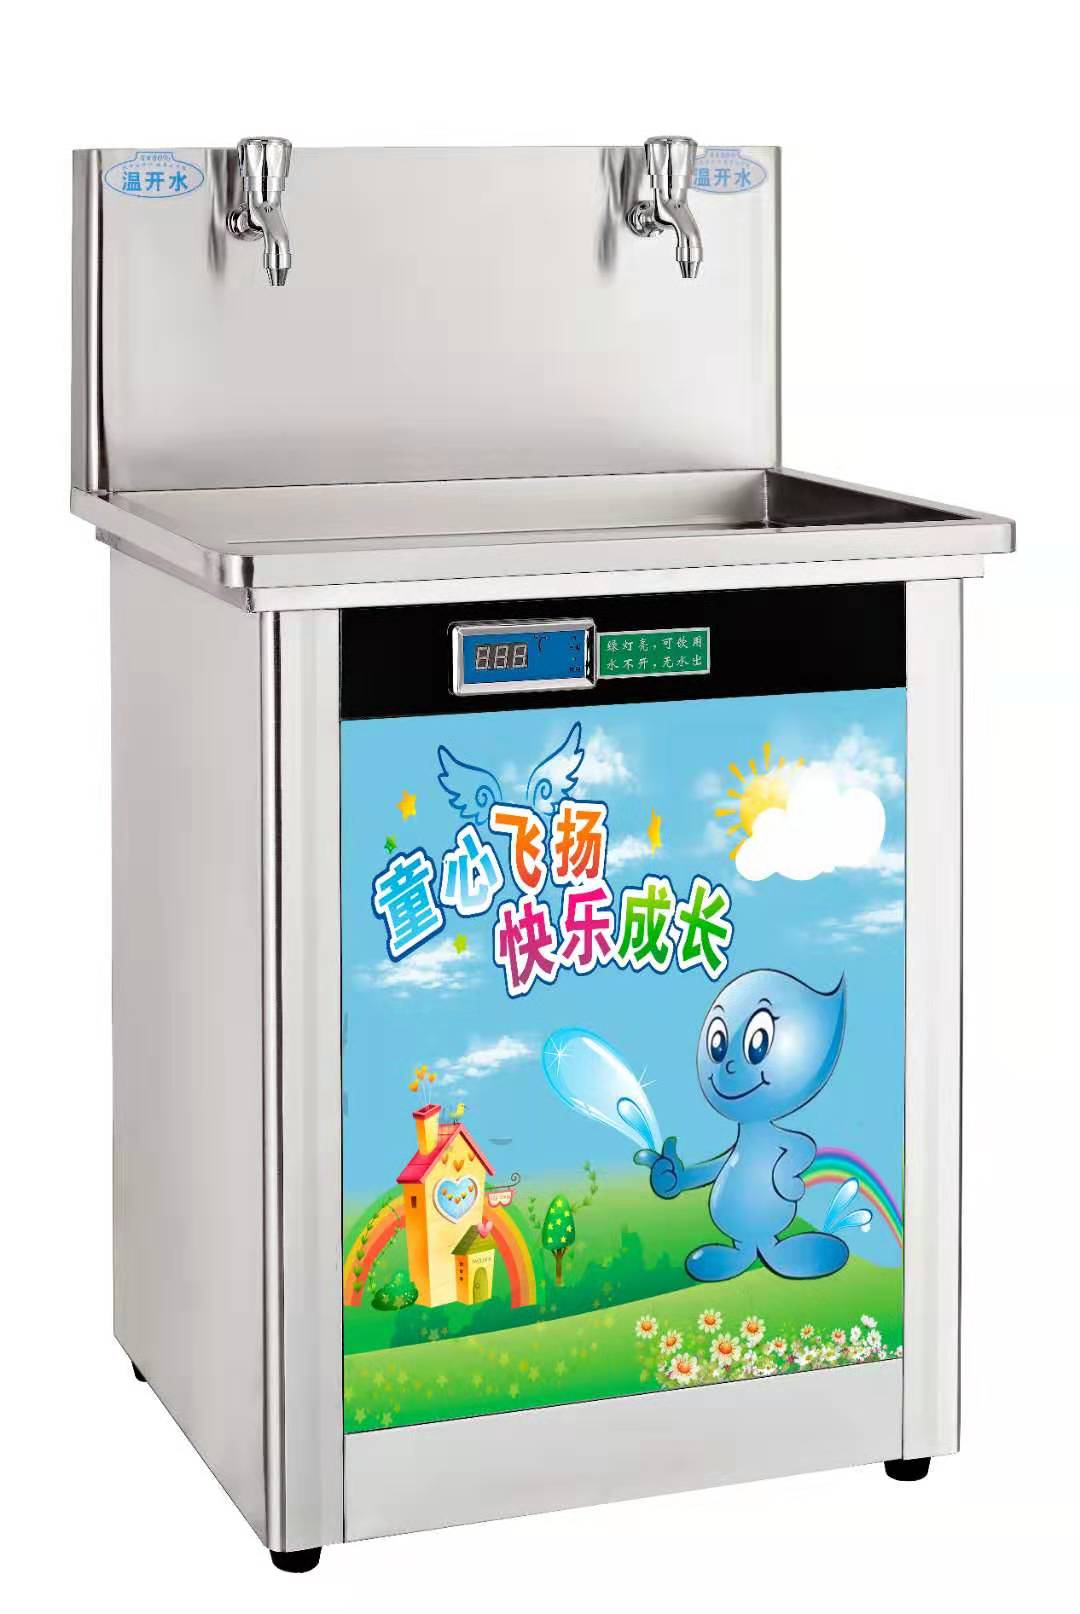 太仓昆山吴江工厂温热饮水机节能开水器智能饮水机价格便宜